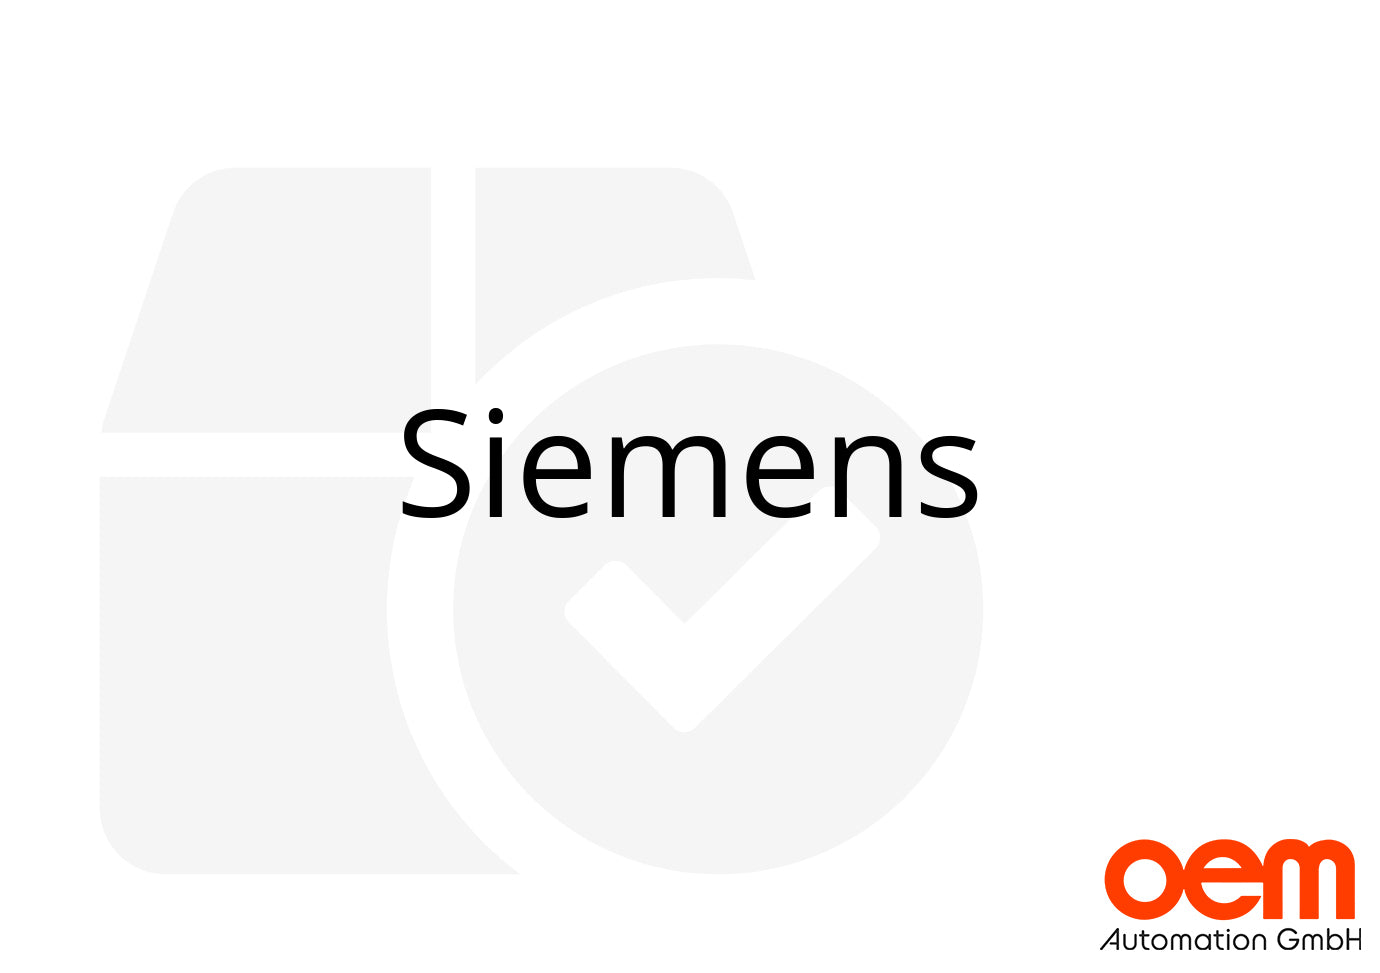 Siemens 6SL3120-1TE21-0AA4